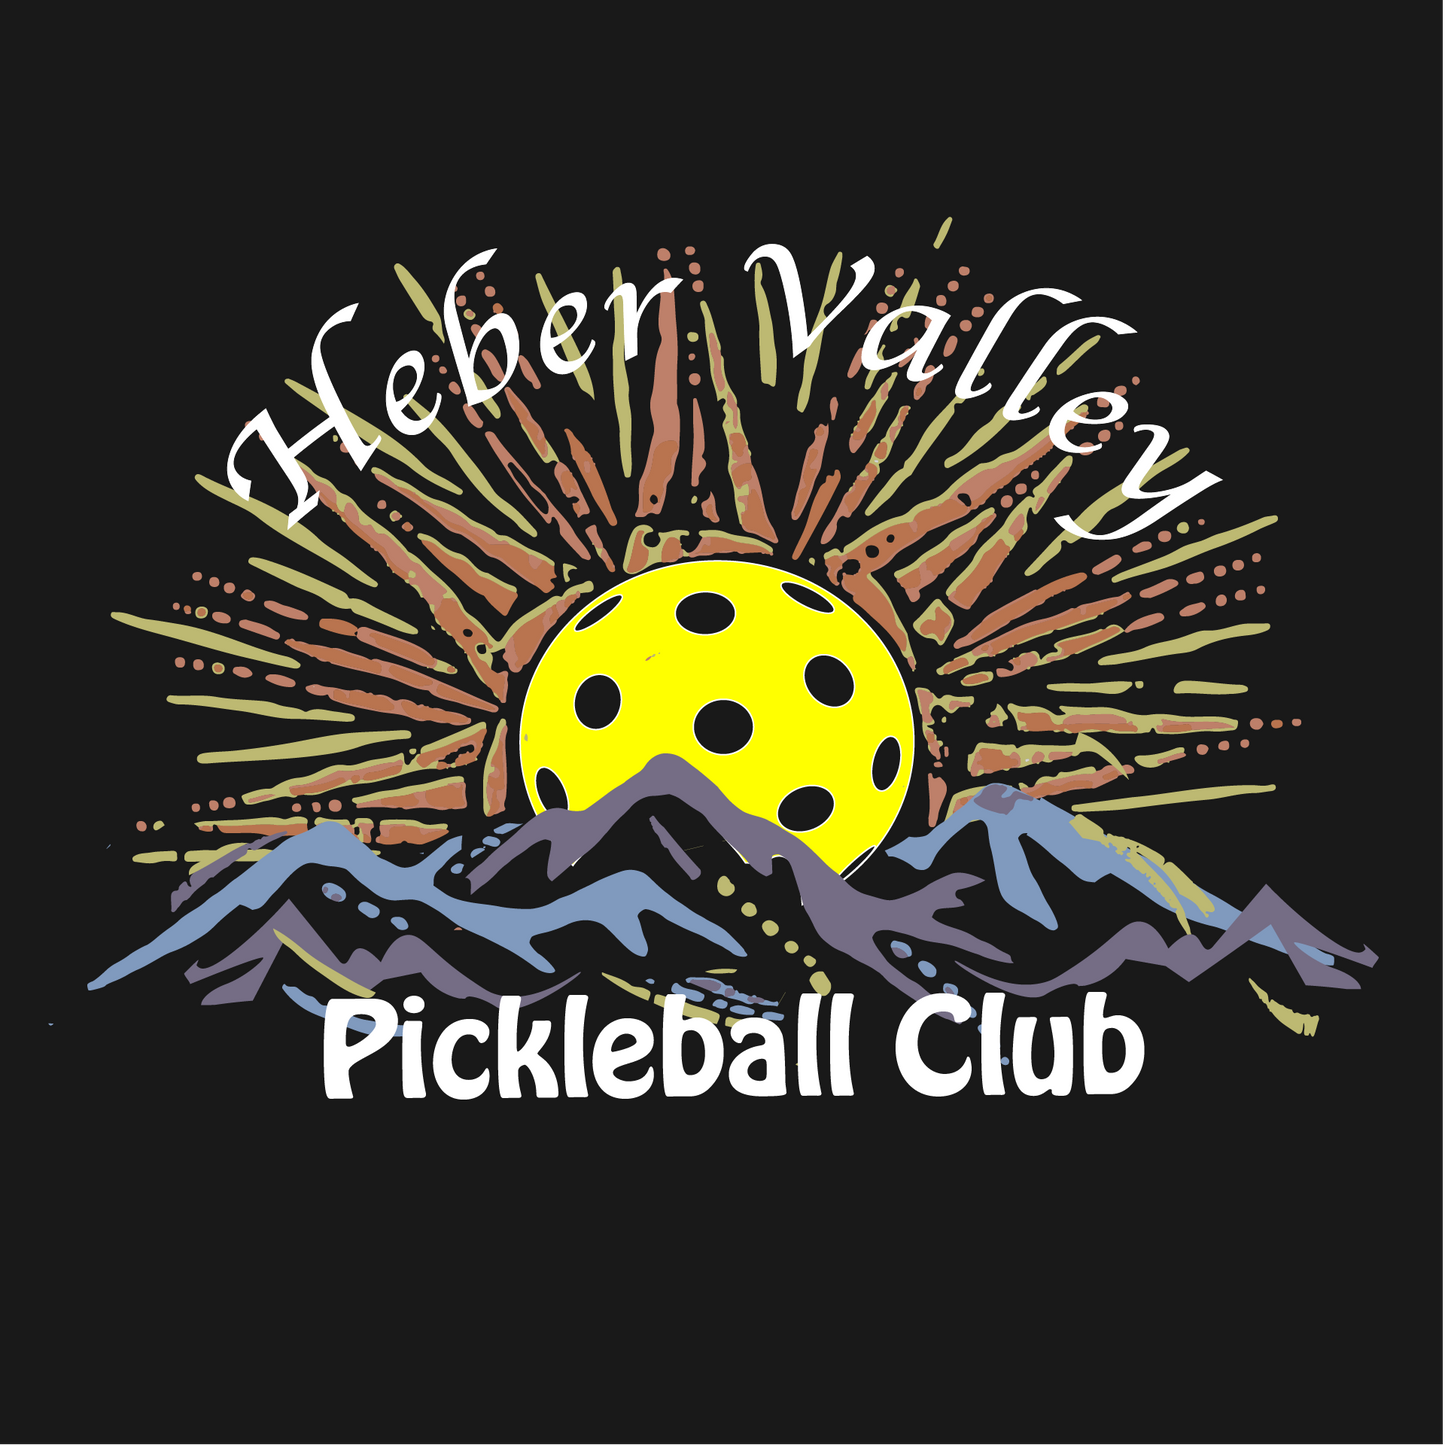 Heber Valley Pickleball Club (Large) | Men's Short Sleeve Pickleball Shirt | 100% Polyester